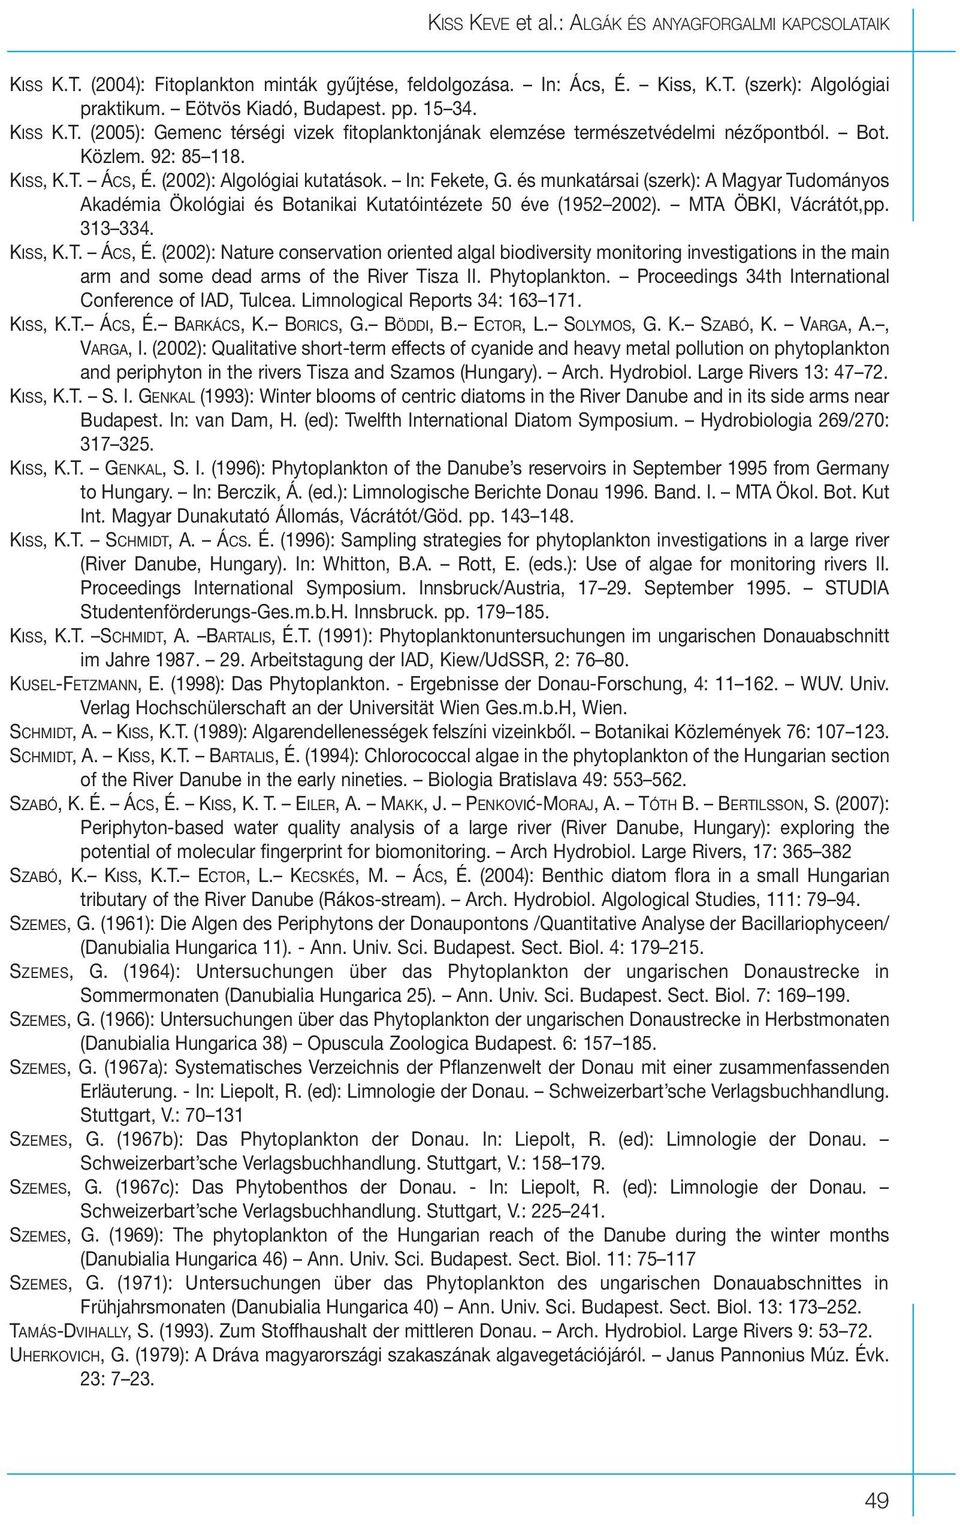 és munkatársai (szerk): A Magyar Tudományos Akadémia Ökológiai és Botanikai Kutatóintézete 50 éve (1952 2002). MTA ÖBKI, Vácrátót,pp. 313 334. KISS, K.T. ÁCS, É.